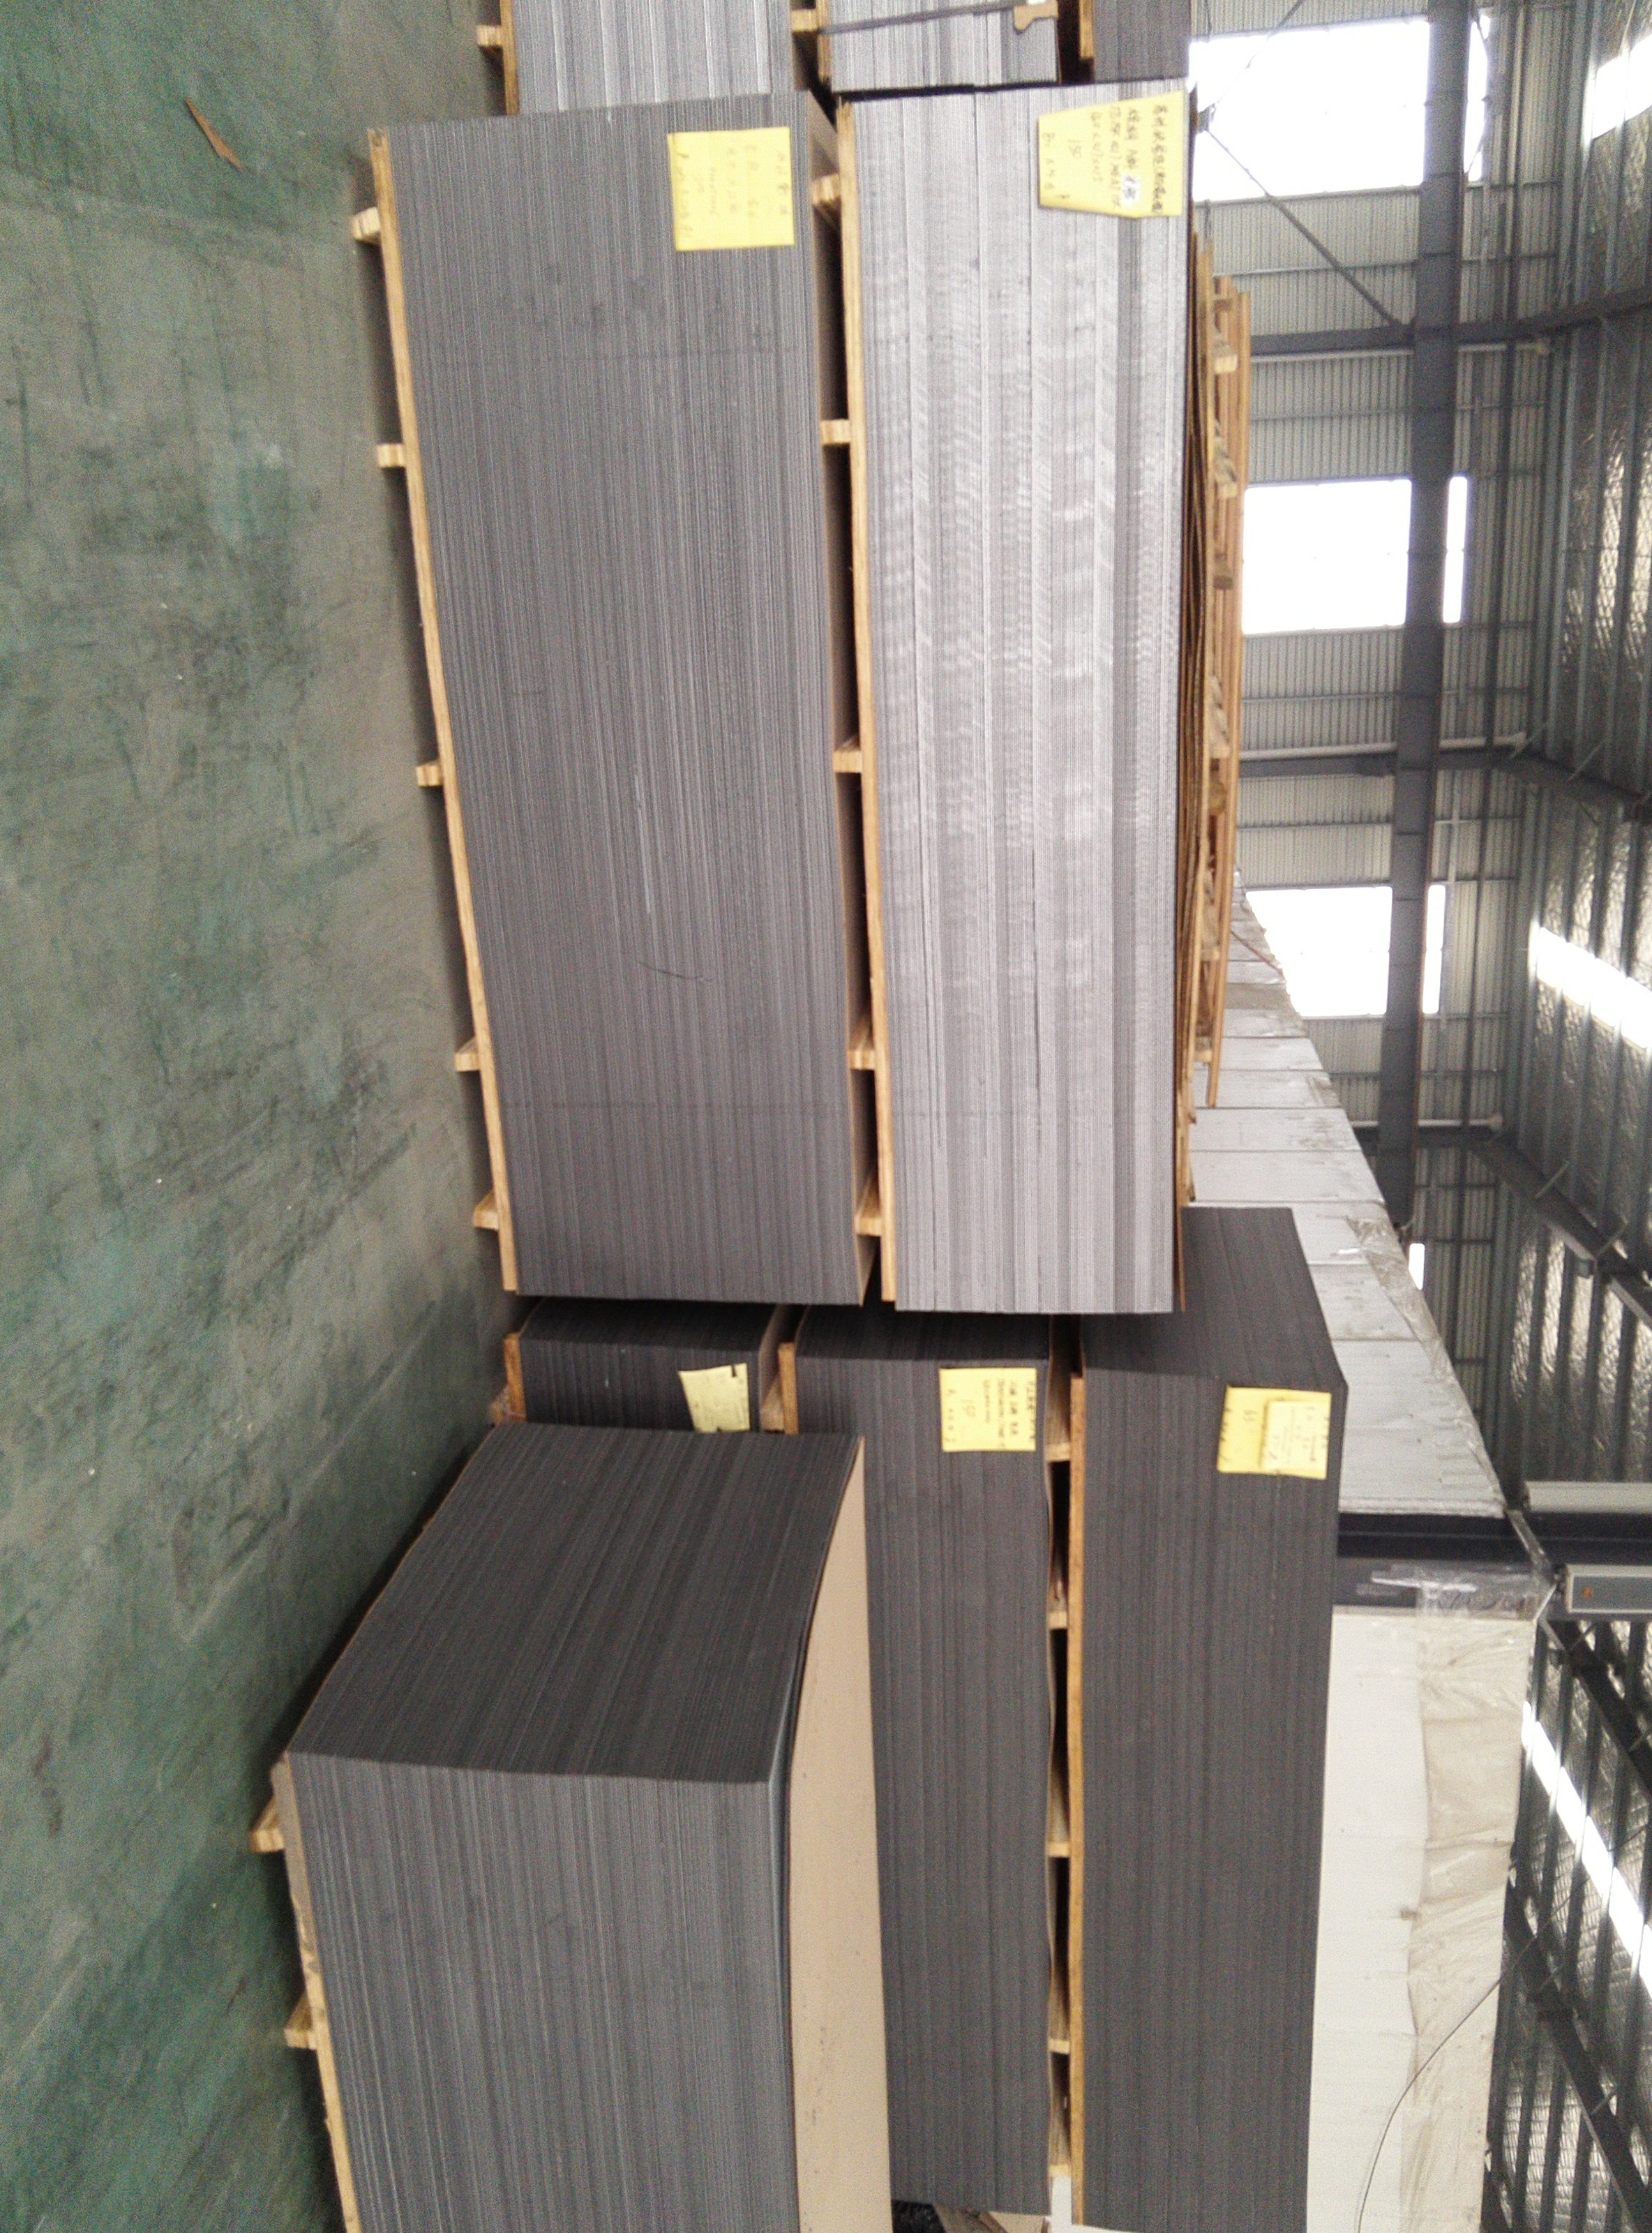 Panel compuesto de aluminio gris banco